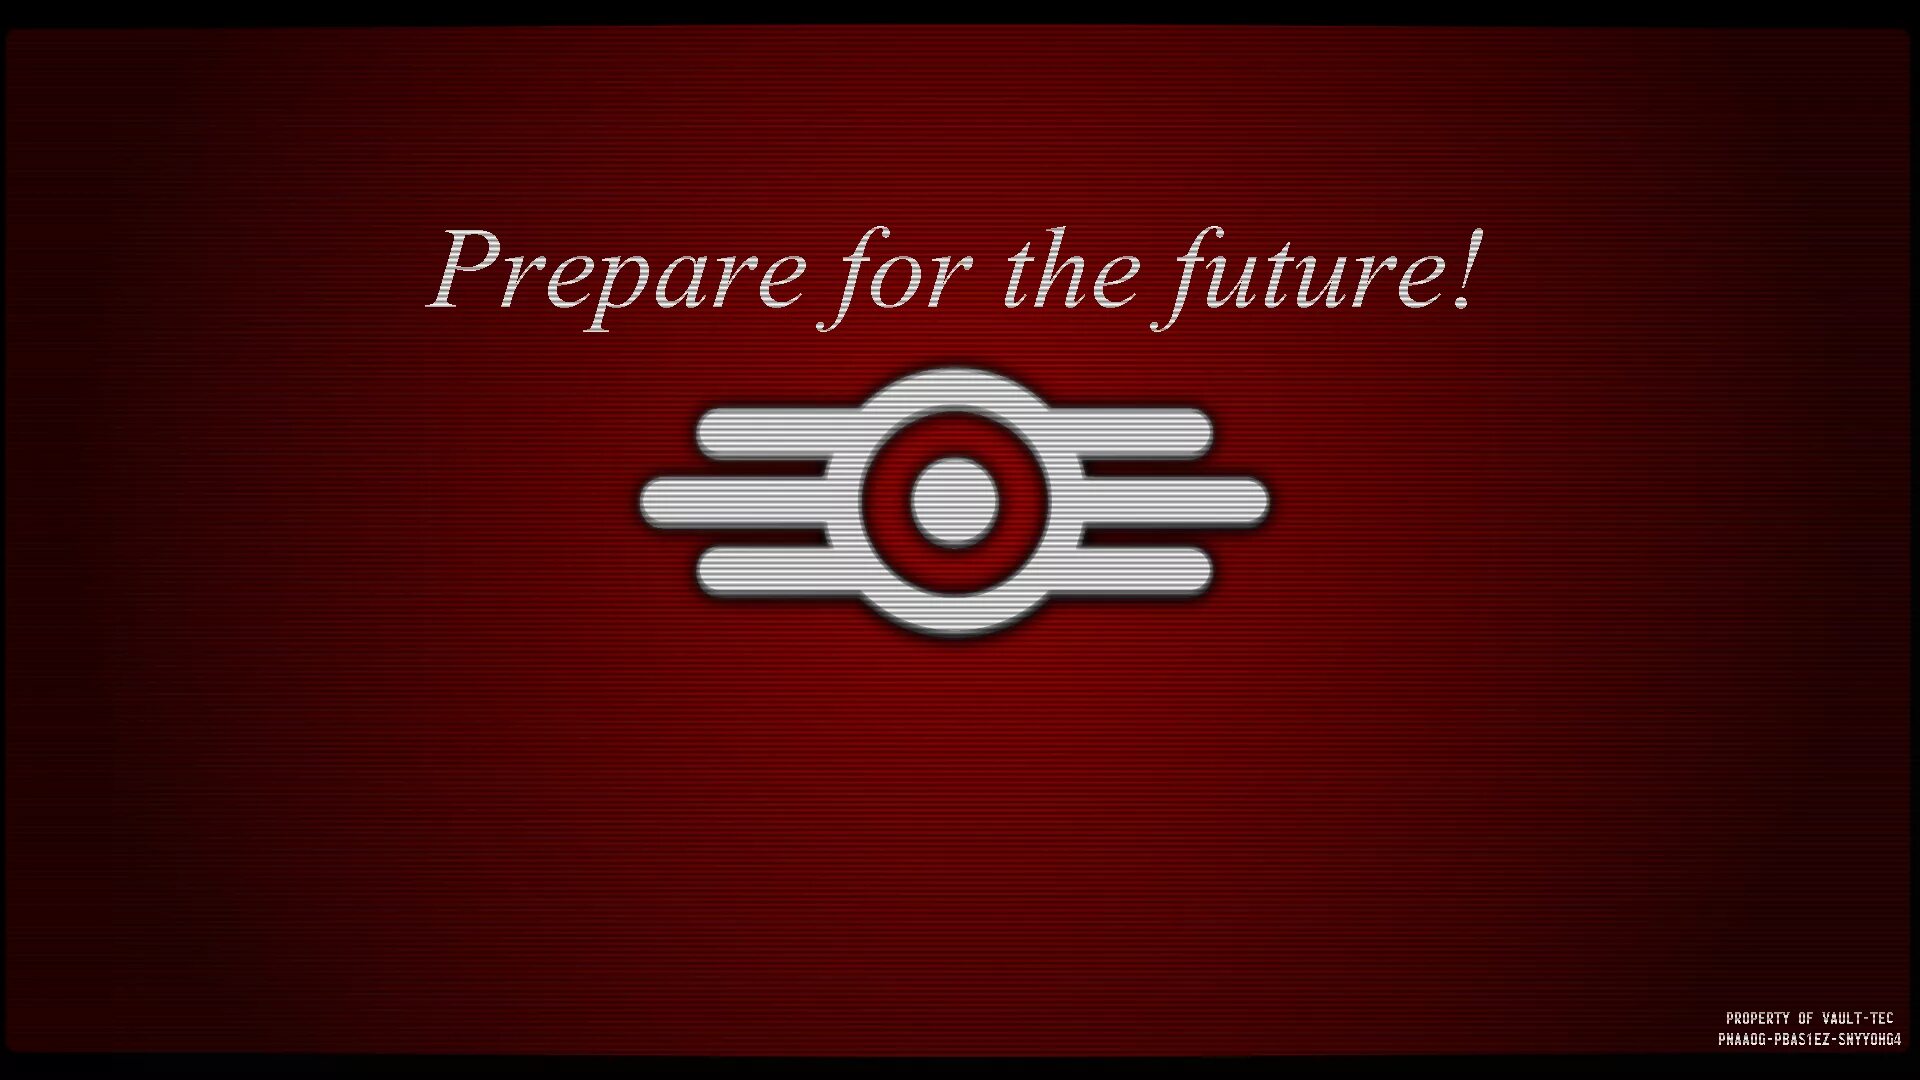 Prepare for the Future. Vault Tec prepare for the Future. Prepare your ASUS. The here prepare. Prepare